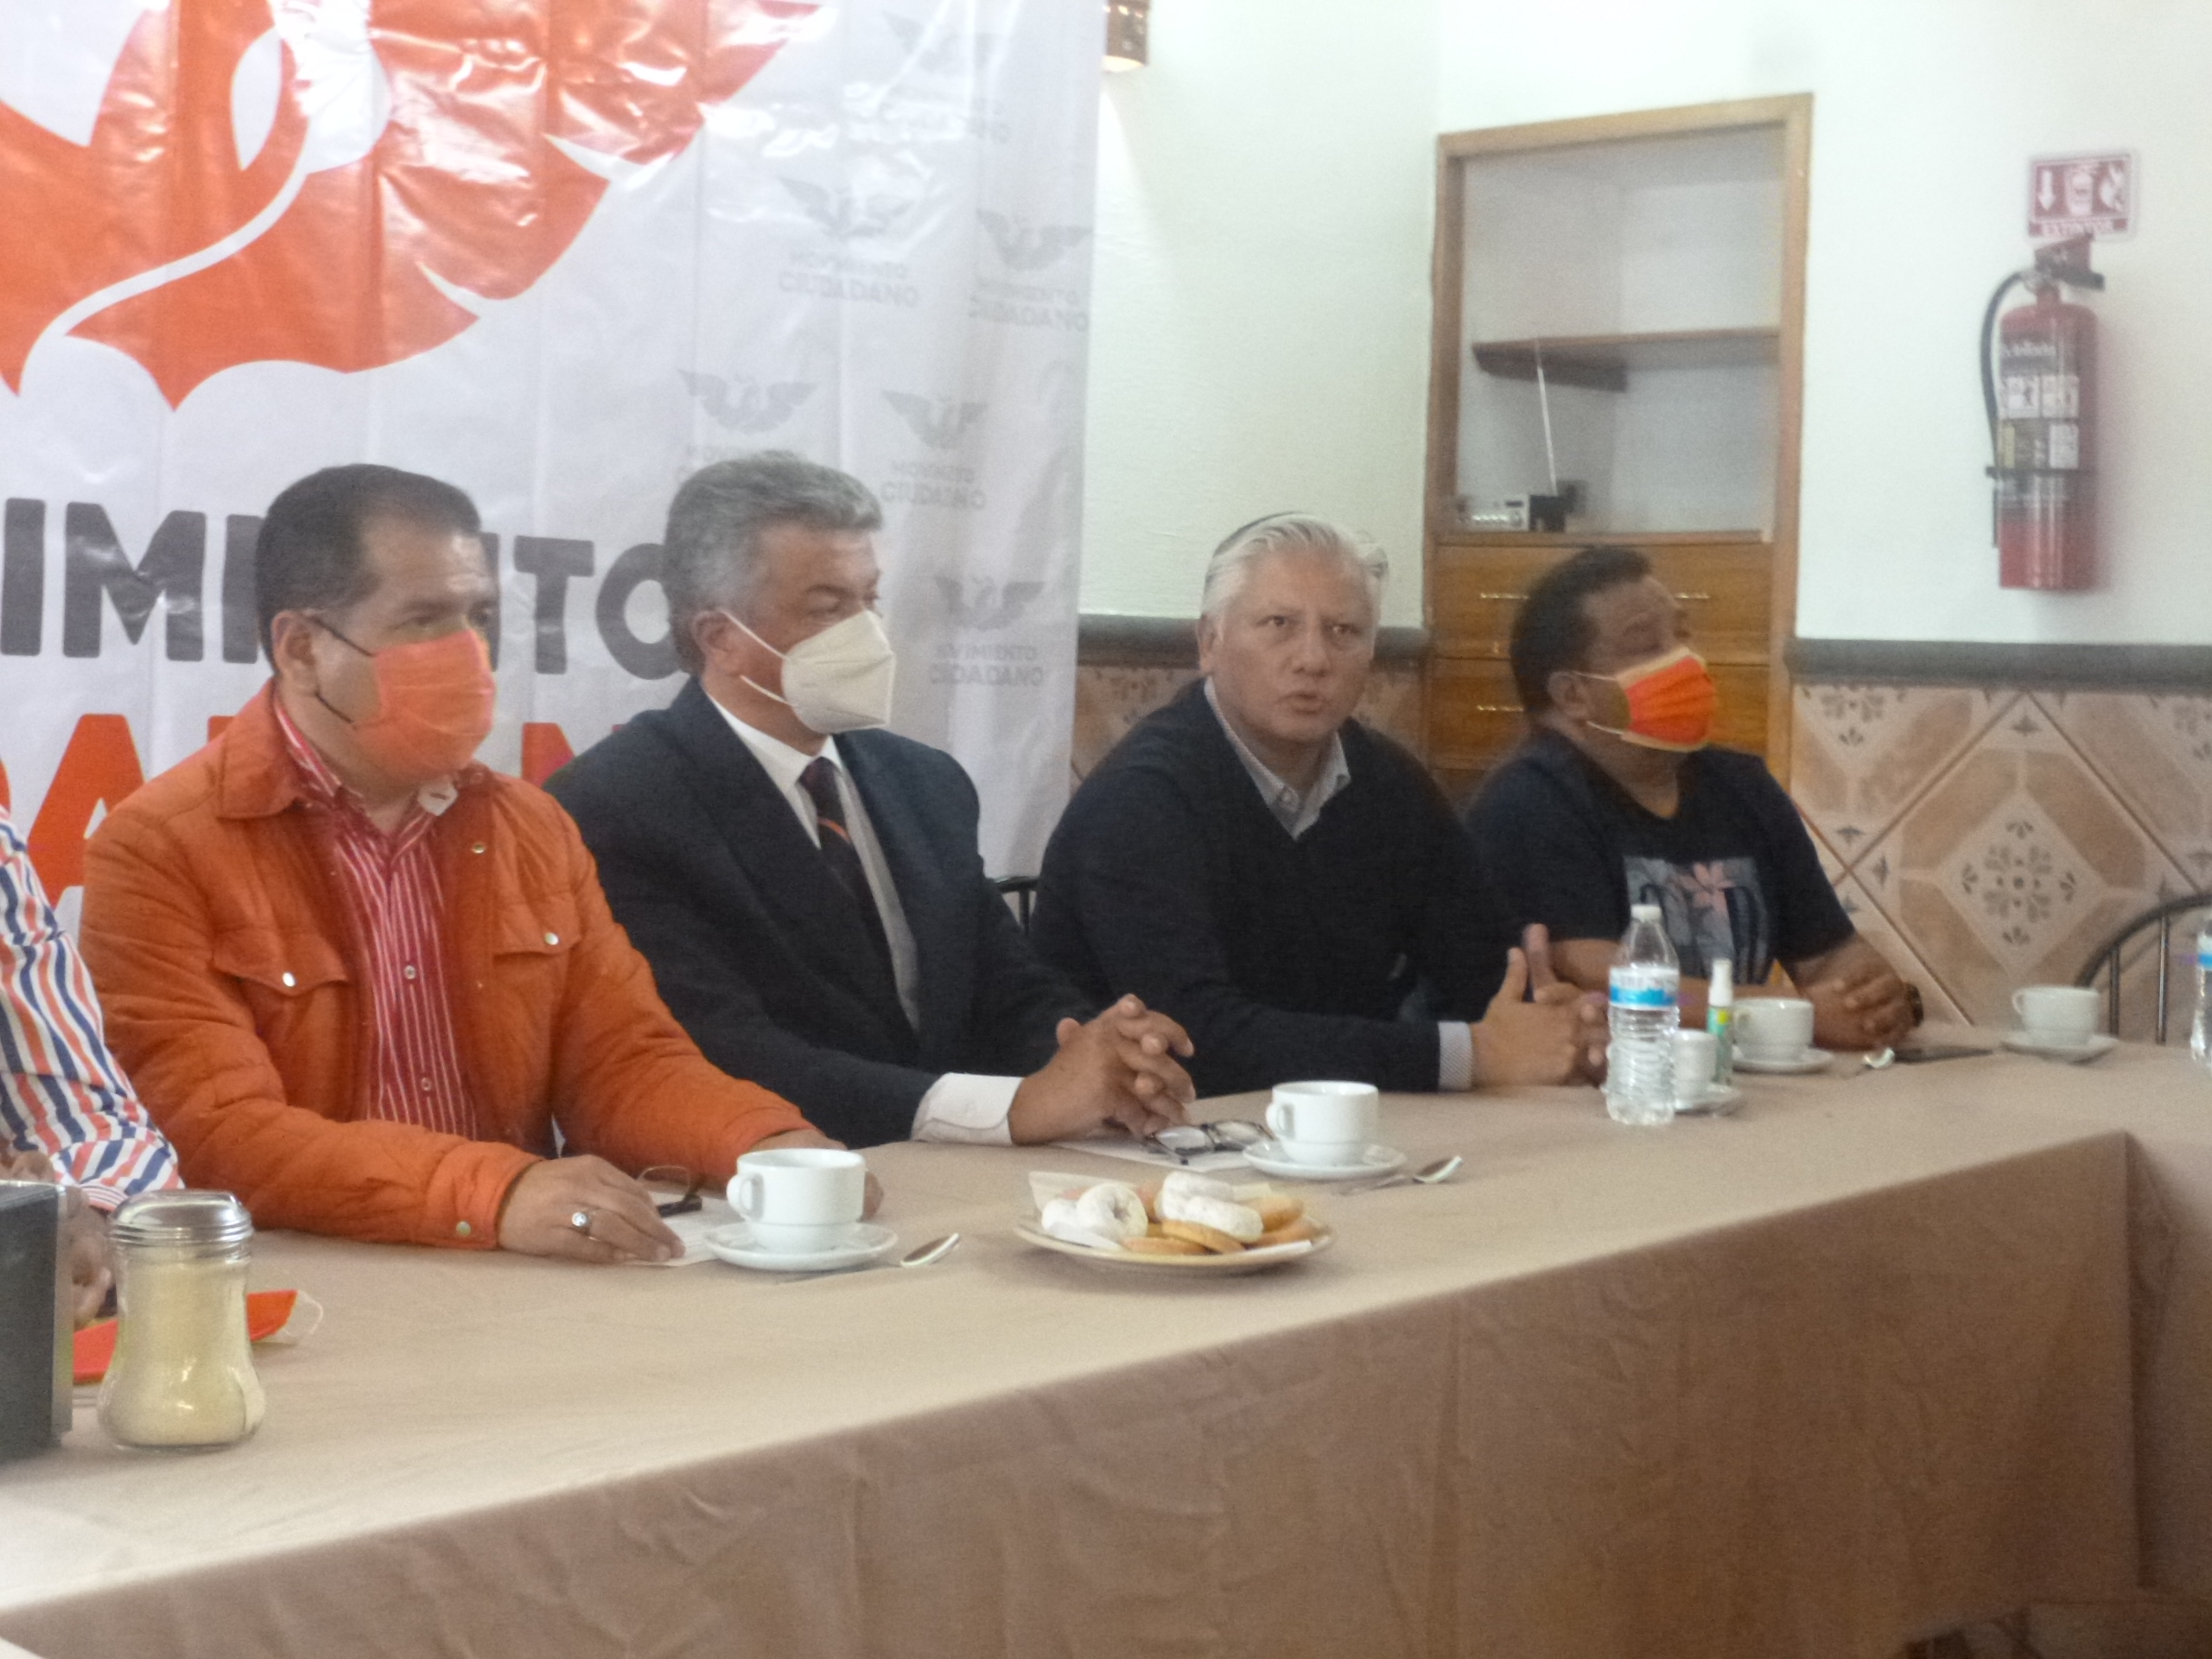 Movimiento Ciudadano impugnó la elección en San Martín Texmelucan